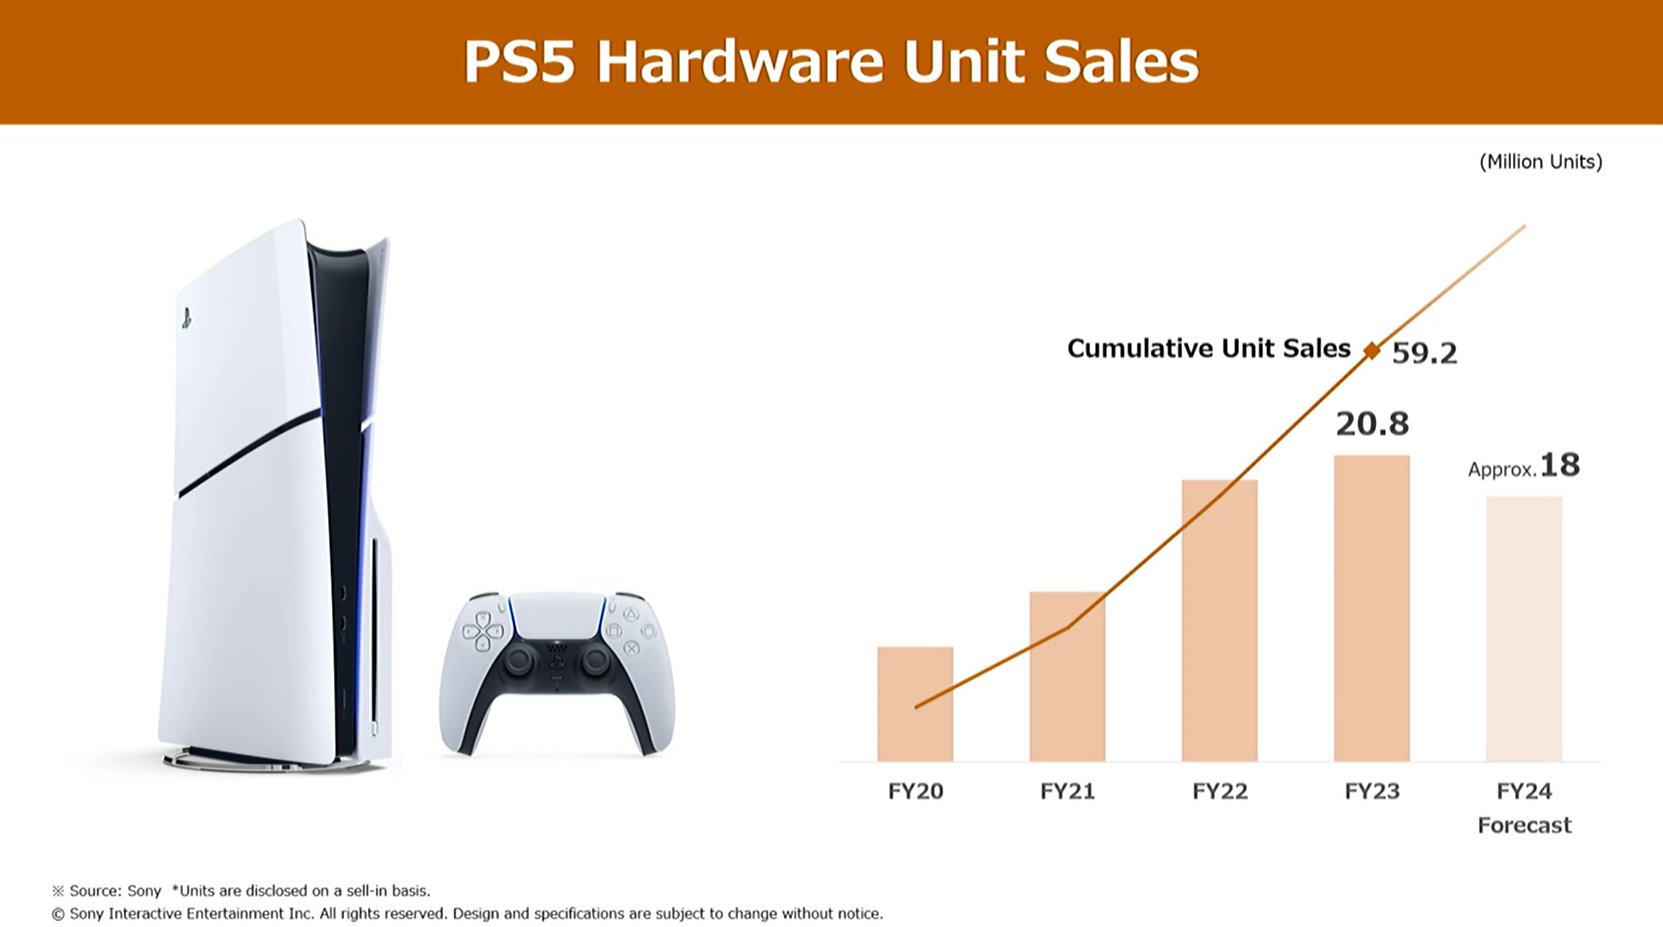 PS5 sales figures